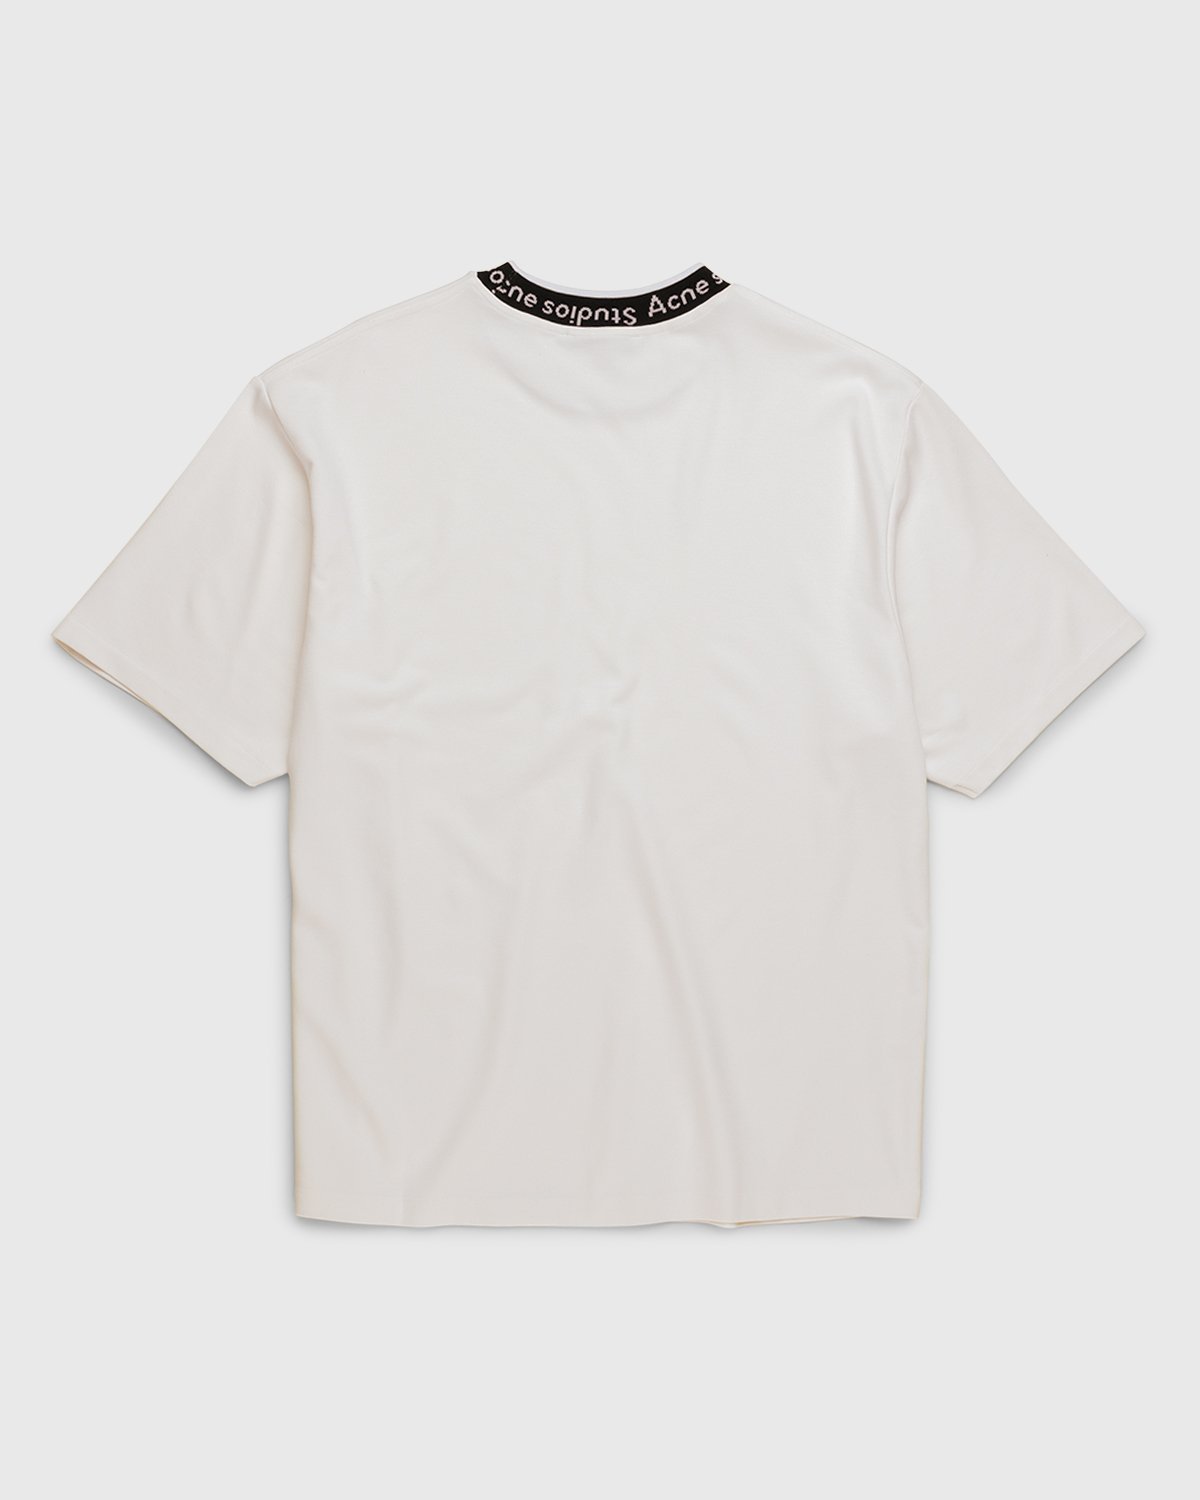 Acne Studios - Logo T-Shirt White - Clothing - White - Image 2